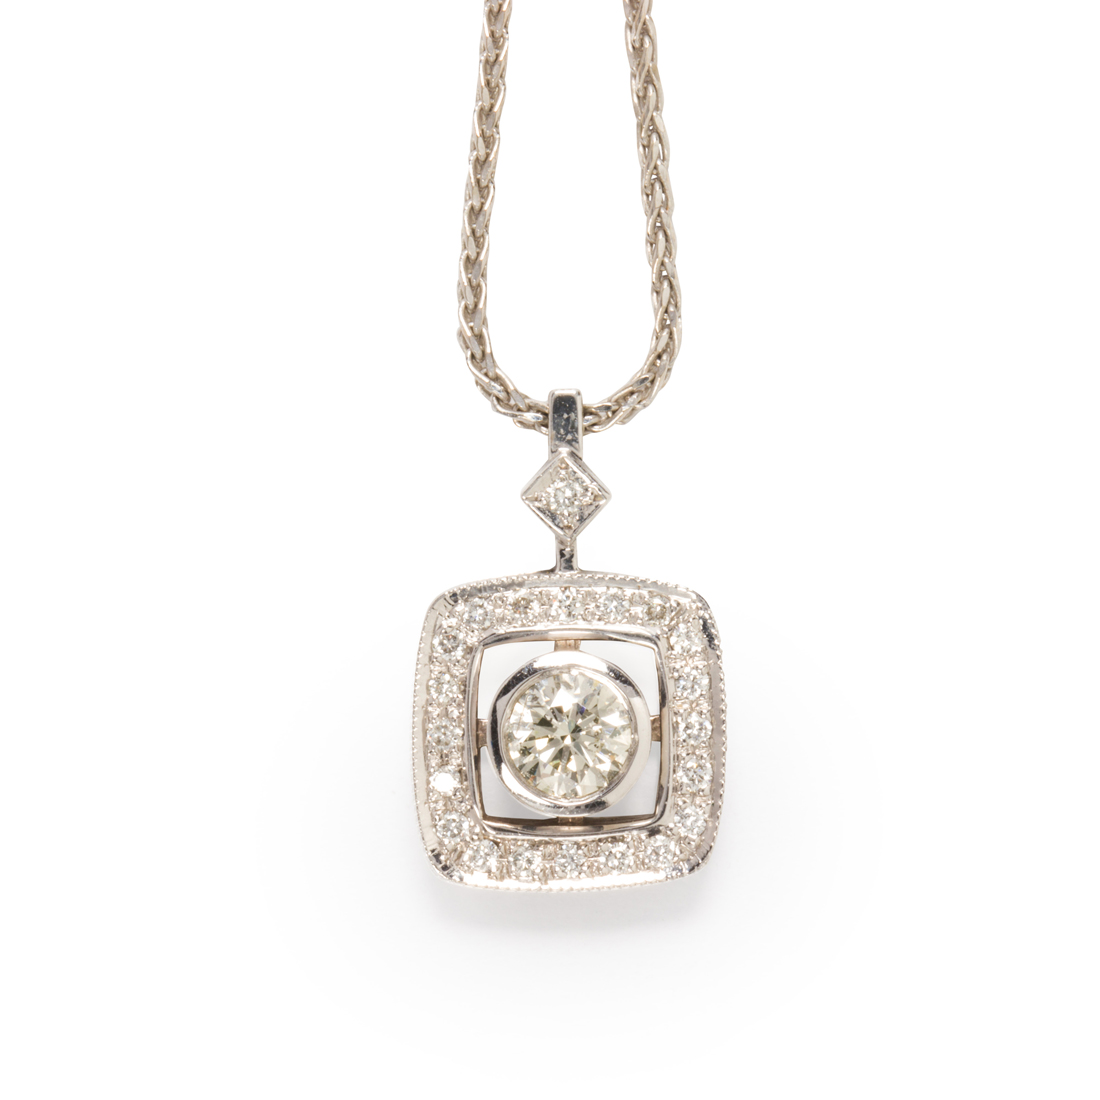 A DIAMOND AND FOURTEEN KARAT WHITE 3a1f70